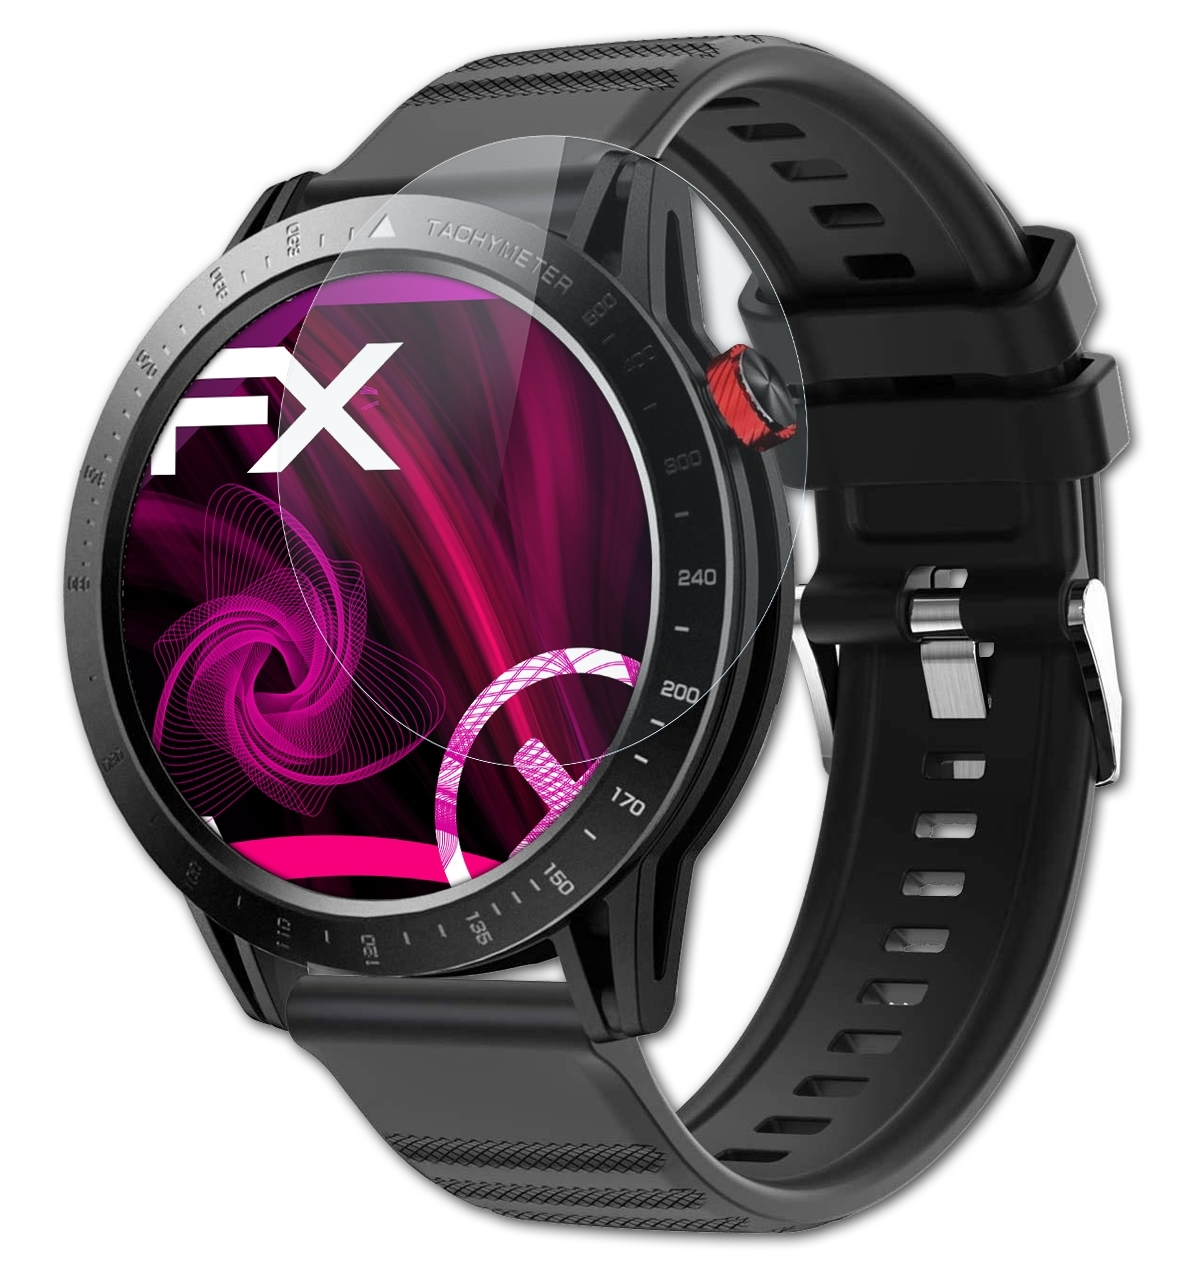 ATFOLIX FX-Hybrid-Glass Schutzglas(für mm) Voigoo 48 Watch